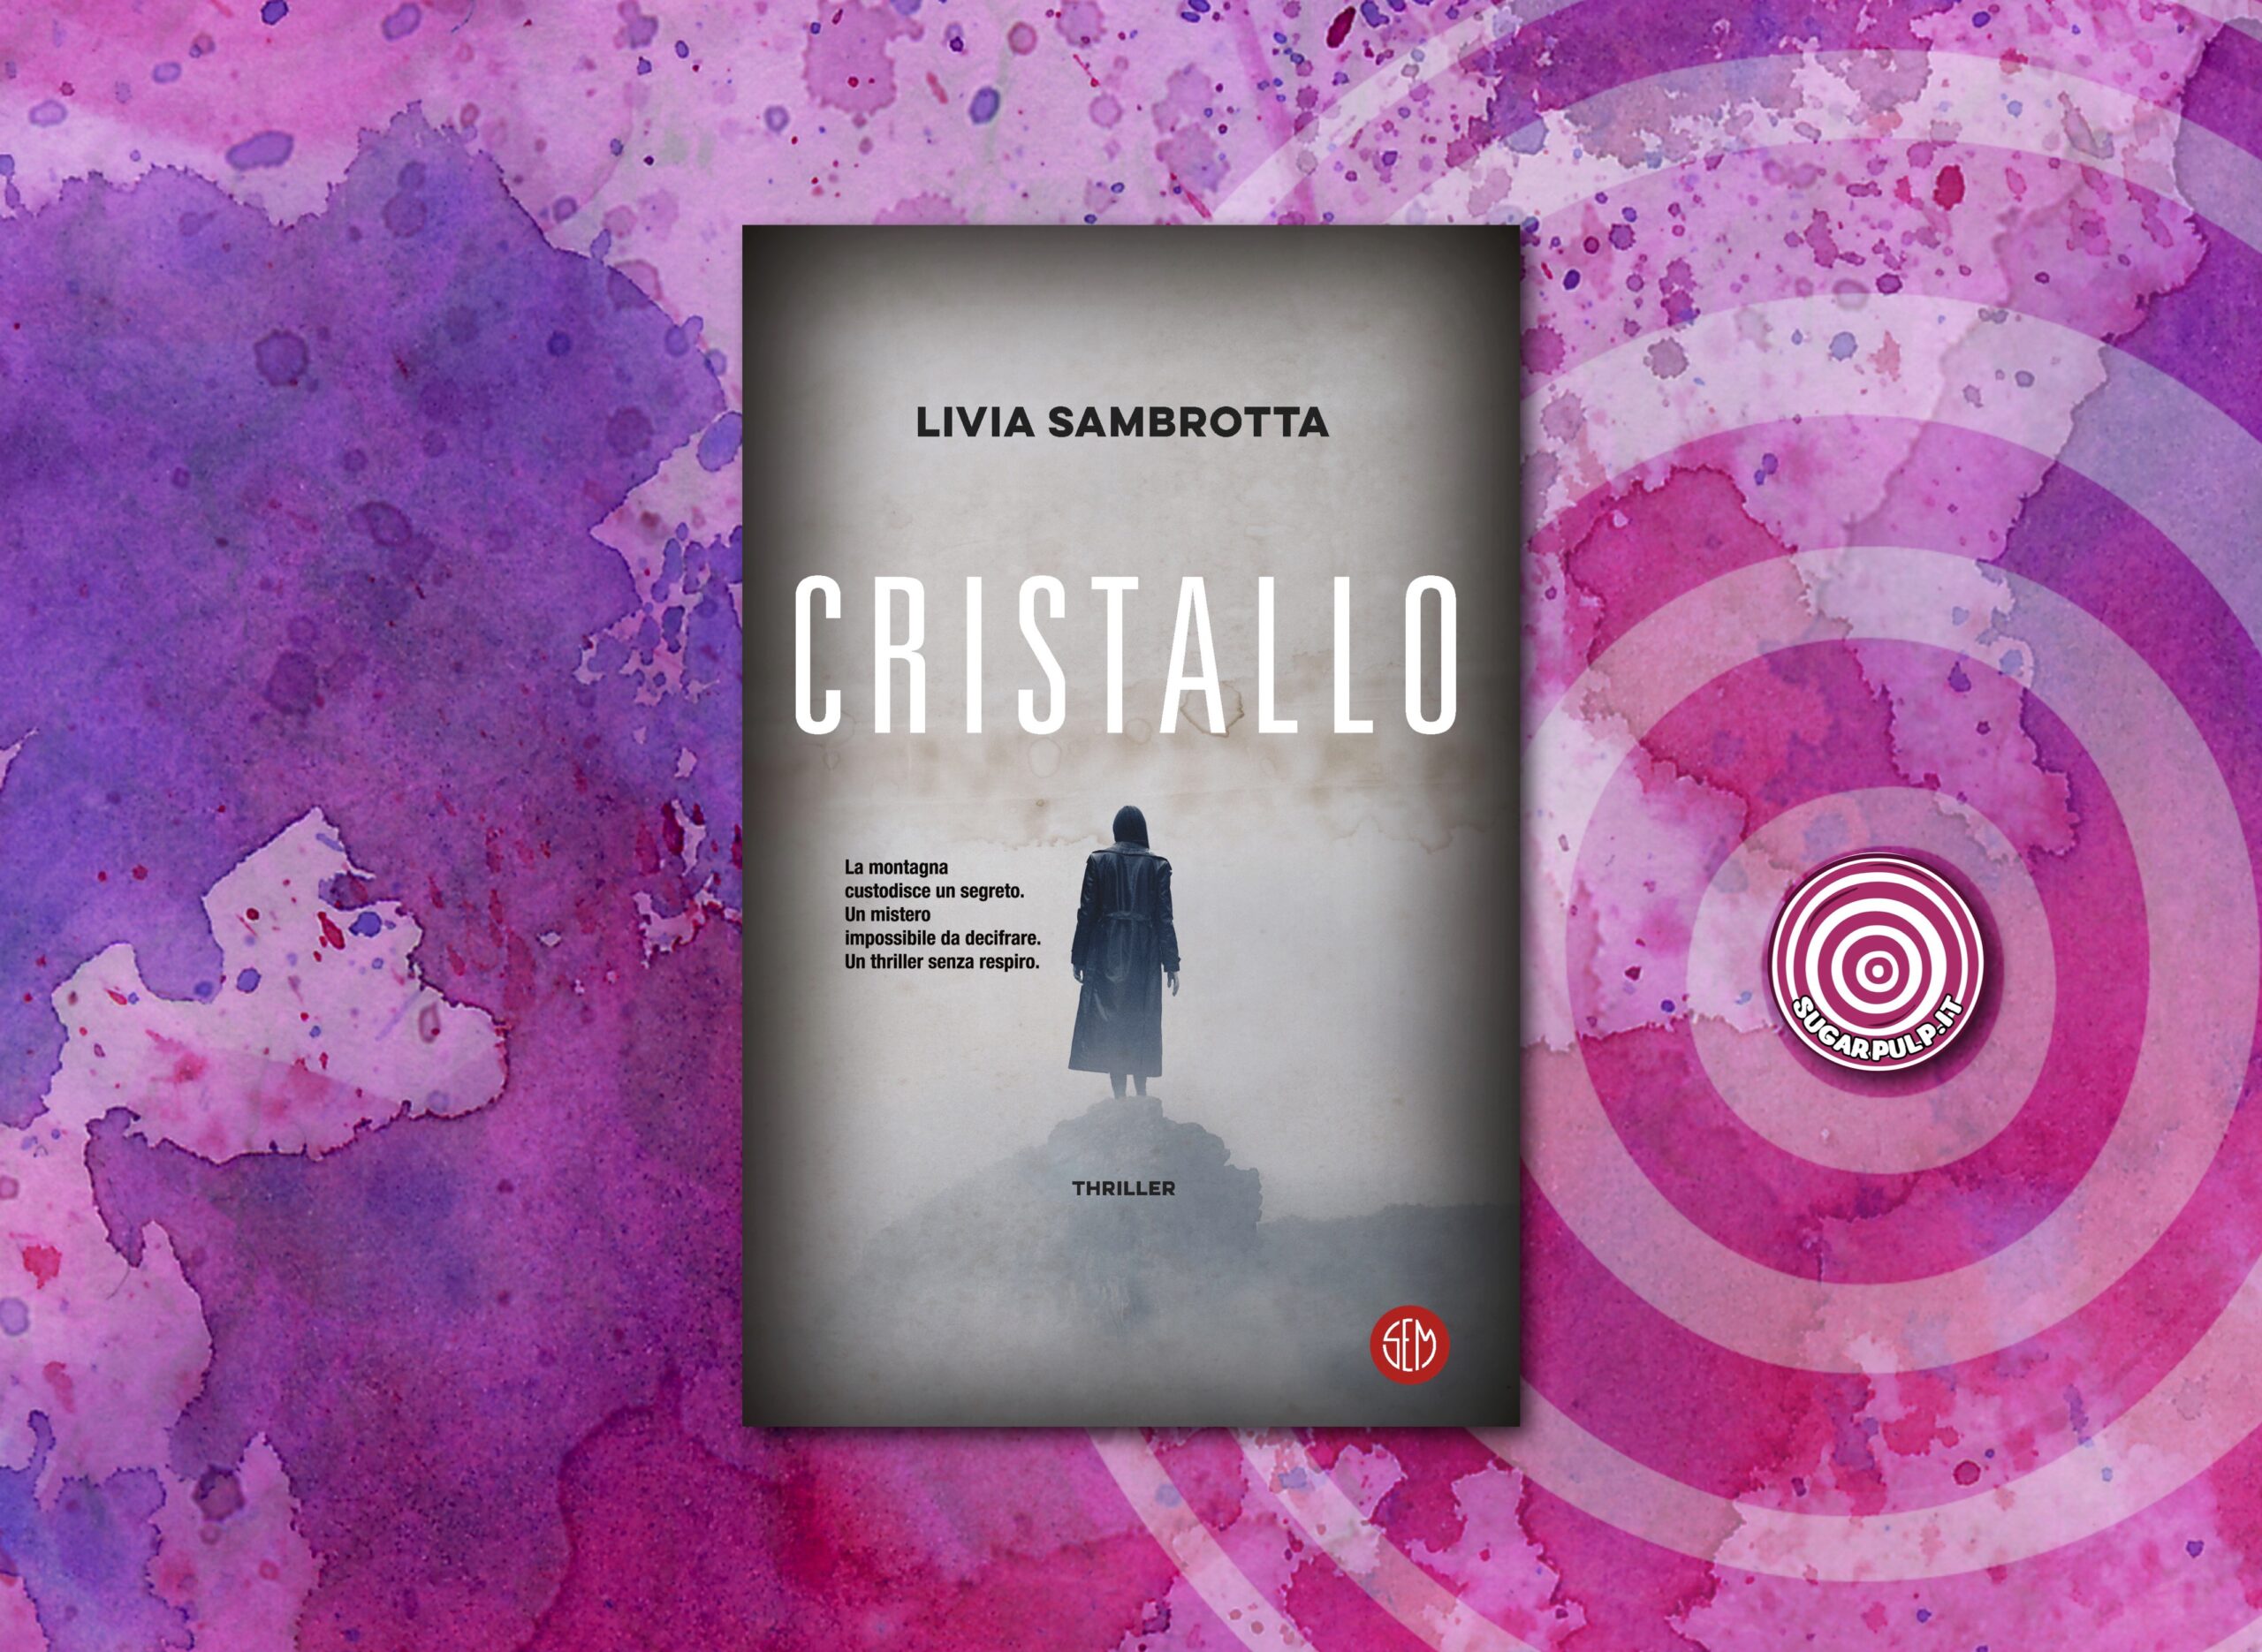 Livia Sambrotta presenta CRISTALLO alla libreria La Forma del Libro di Padova martedì 4 giugno alle ore 18.30. Conversa con l'autrice Matteo Strukul.